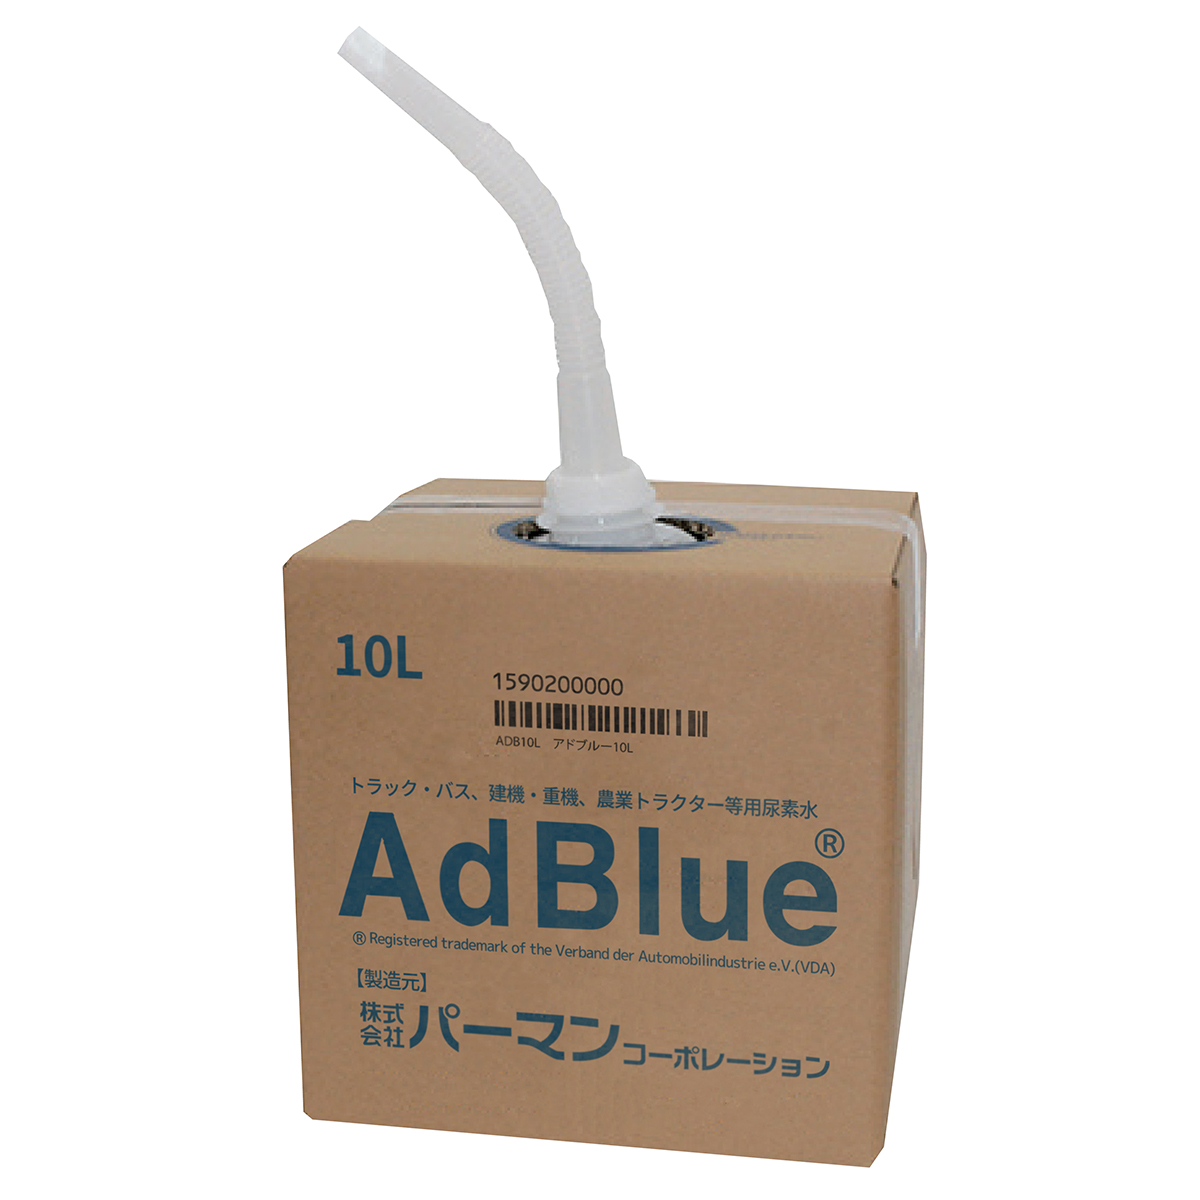 日産化生 AdBlue アドブルー 10L ロングノズルタイプ 尿素SCR